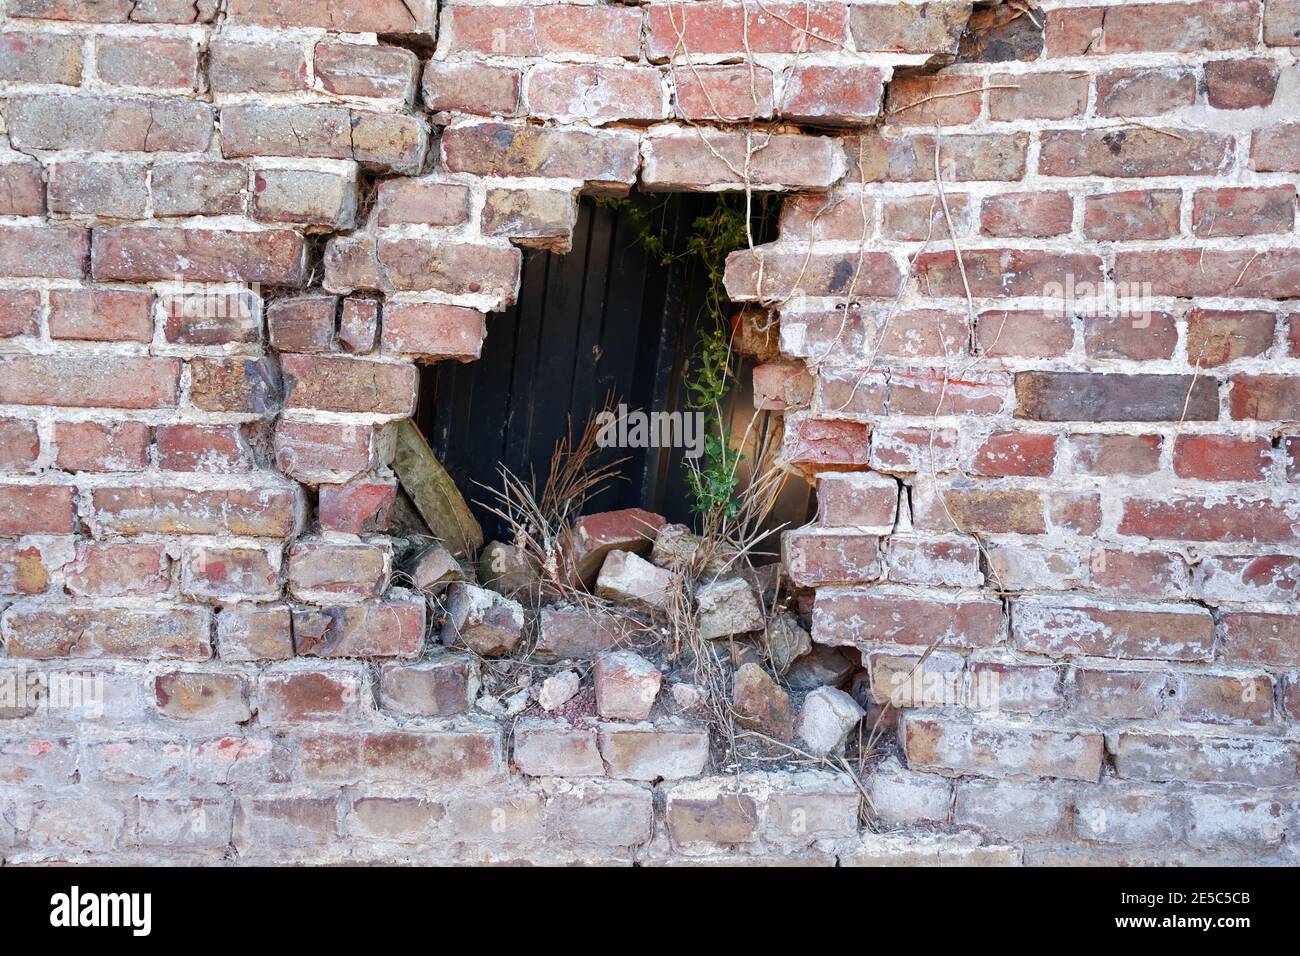 Photographie d'un vieux mur de briques en briques brisé poreux et ruiné mur de briques avec trou après accident, de nombreuses fissures, risque d'effondrement, arrière-plan sombre, horizontal Banque D'Images